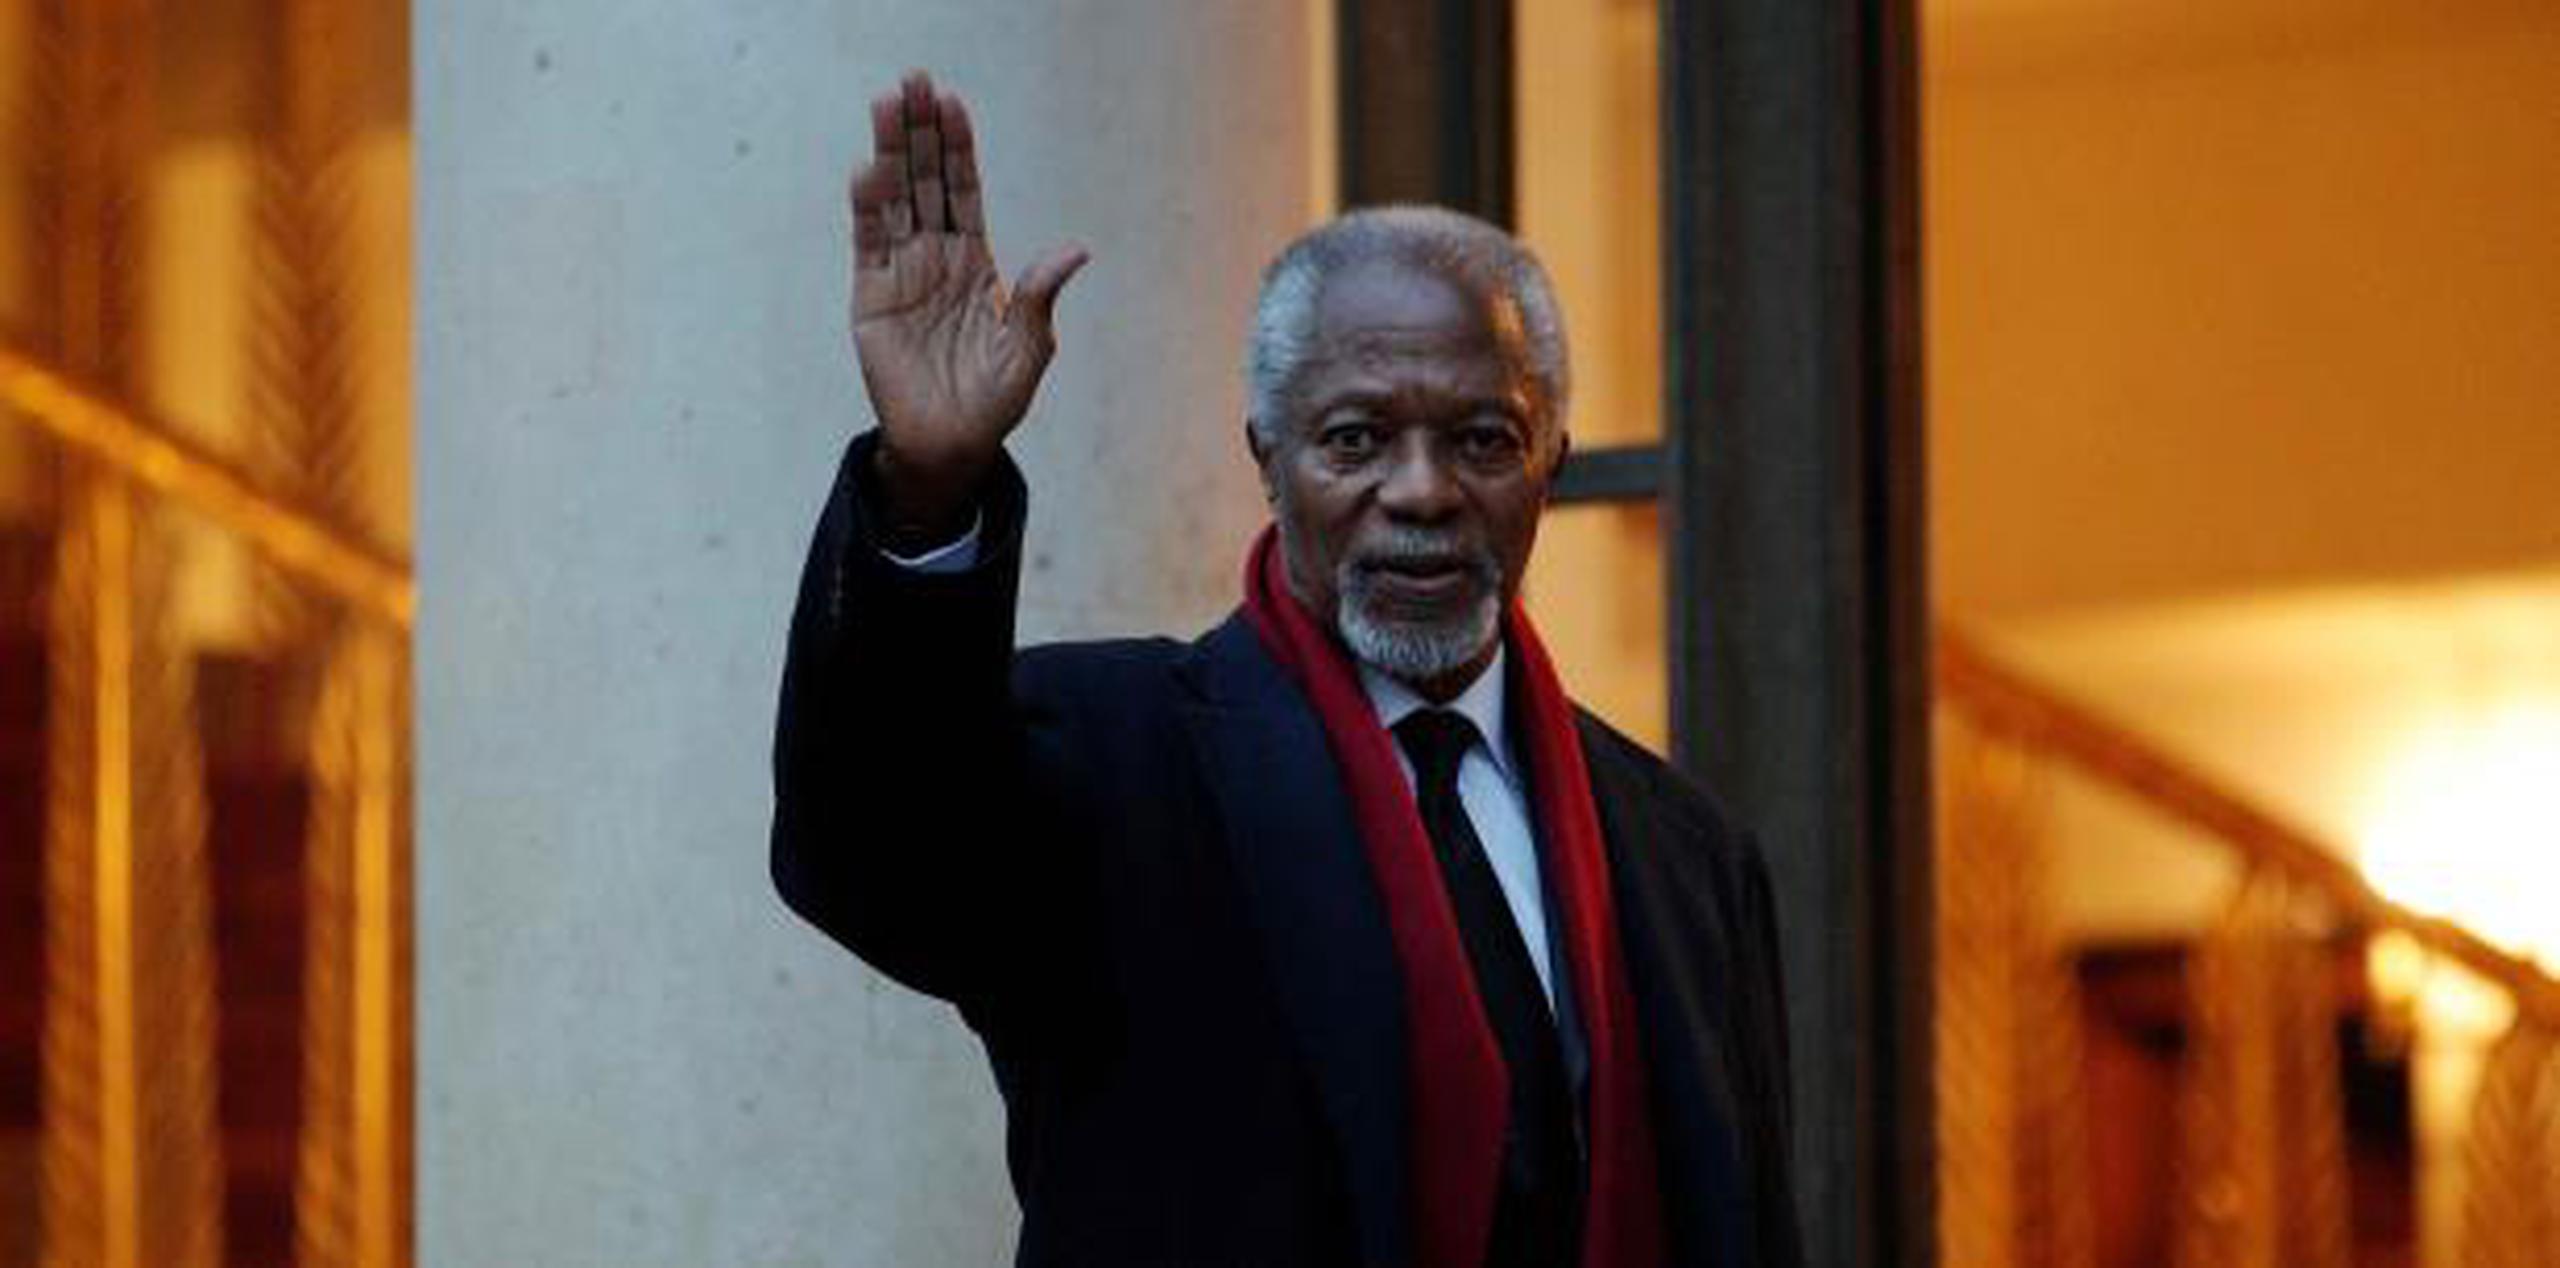 Annan pasó prácticamente toda su carrera como funcionario de Naciones Unidas. (Archivo)